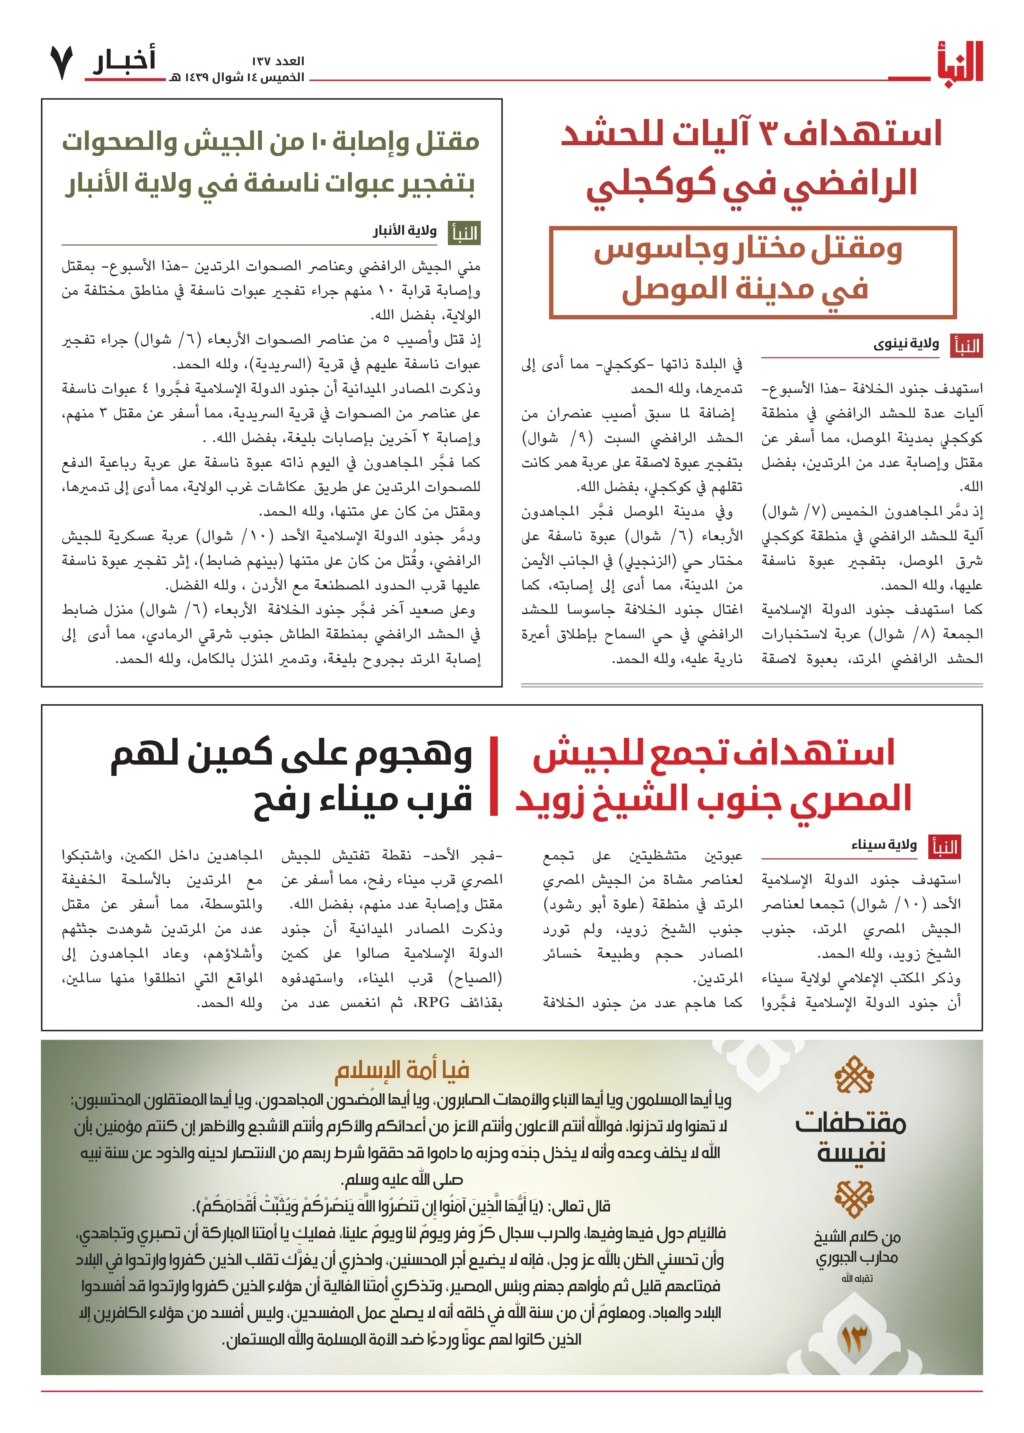 صحيفة النبأ - الاصدارات القديمة  - صفحة 2 0154d510